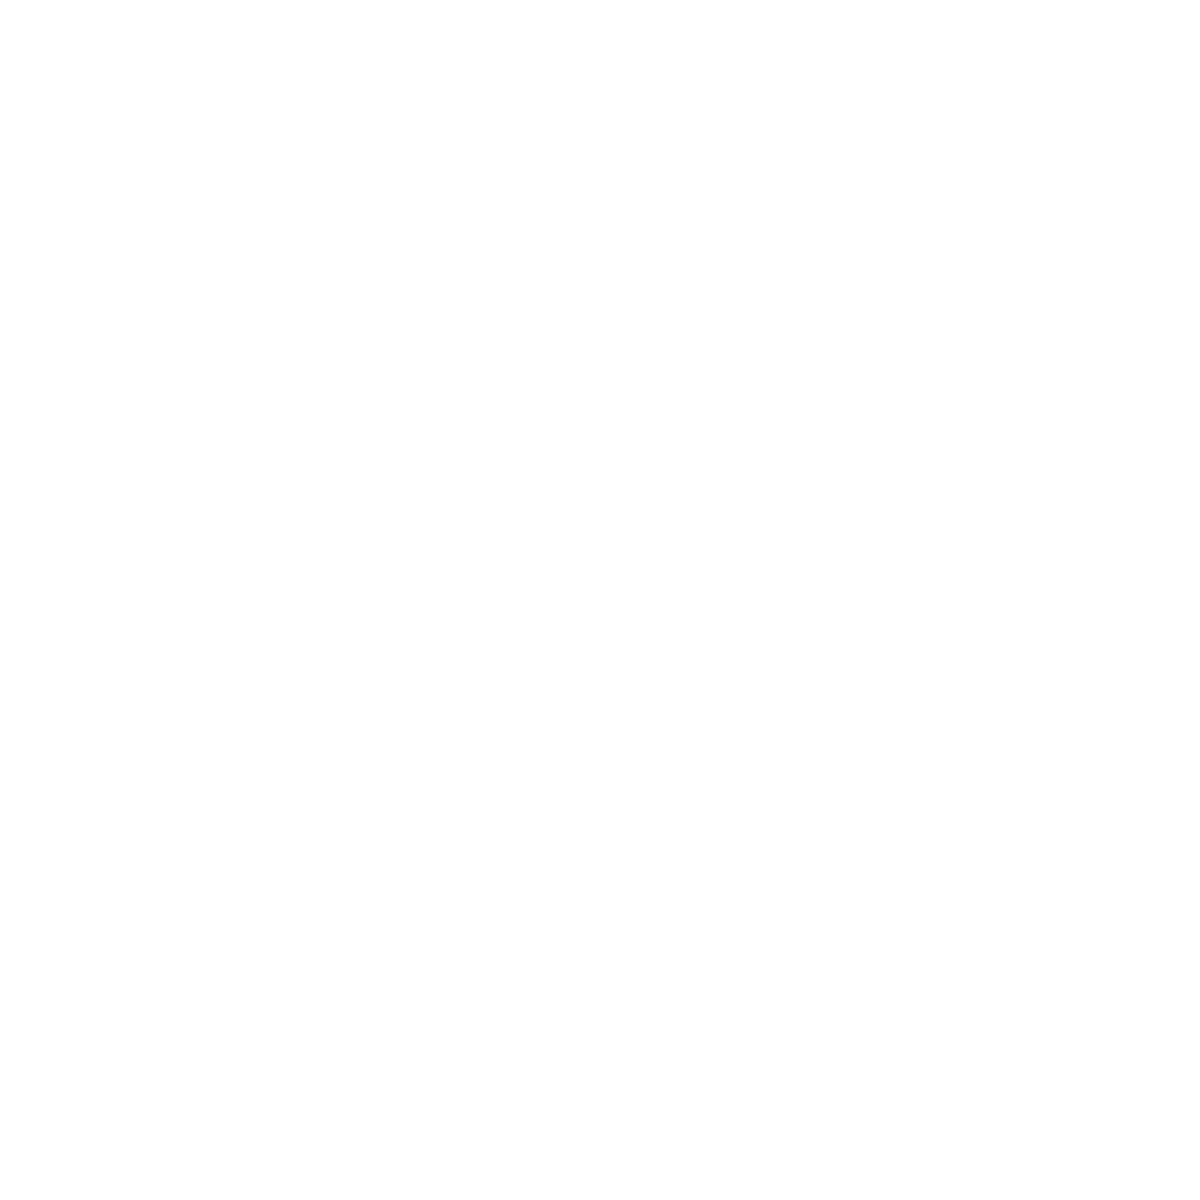 CASTILLO CONSTRUCCIONES